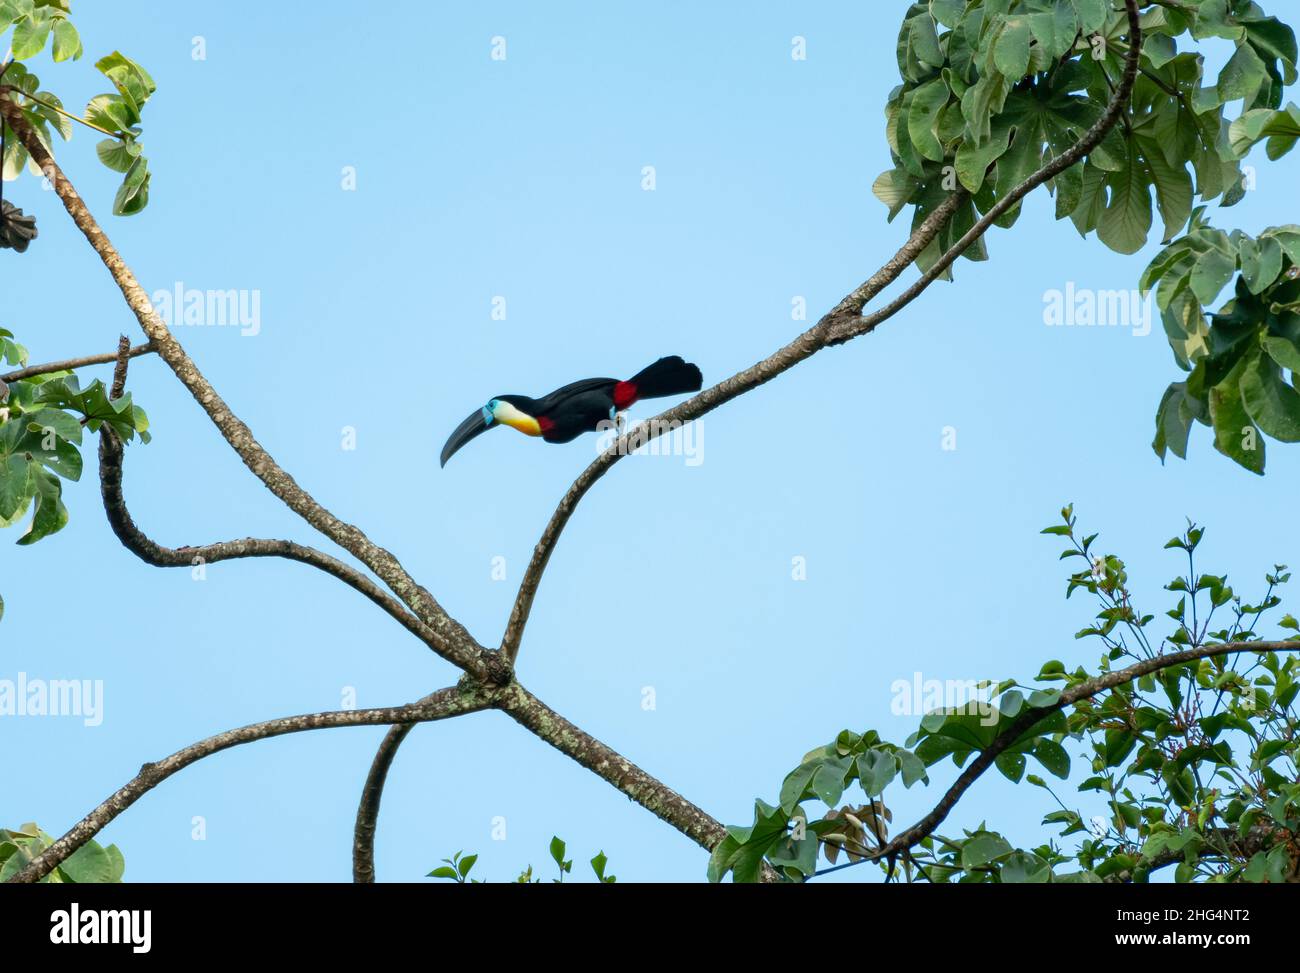 Simplifiziertes Foto eines kanalschnabeligen Tukans, Ramphastos vitellinus, der im gegen den blauen Himmel isolierten Regenwald auf Ästen in einem Baum hüpft. Stockfoto